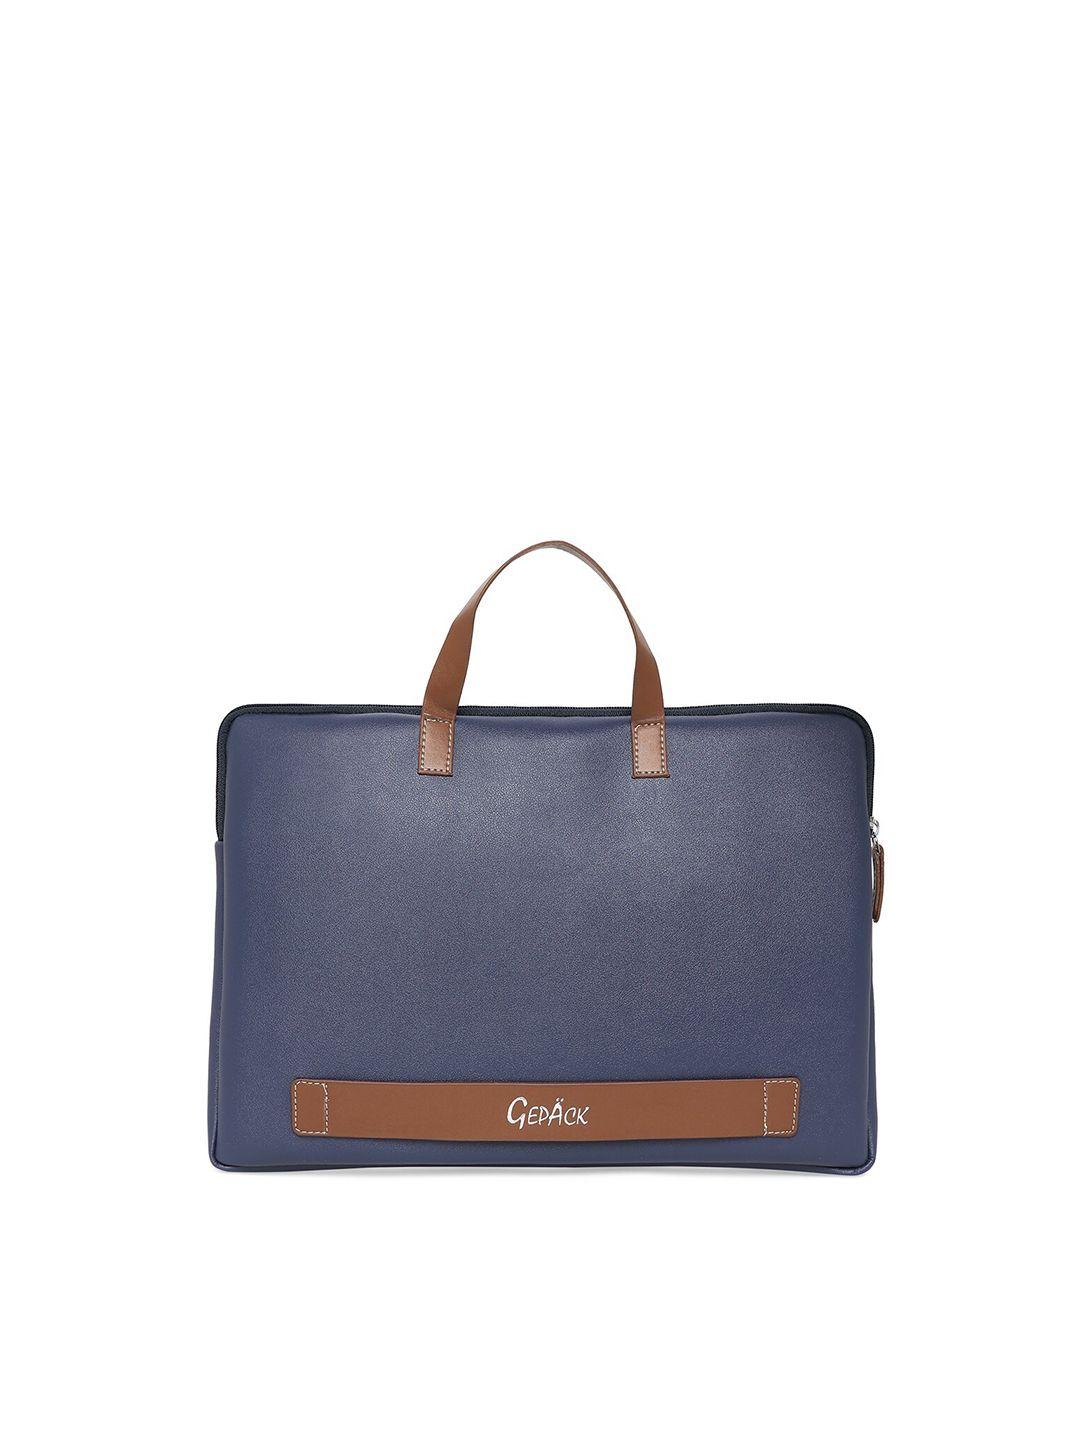 gepack unisex navy blue & brown laptop bag